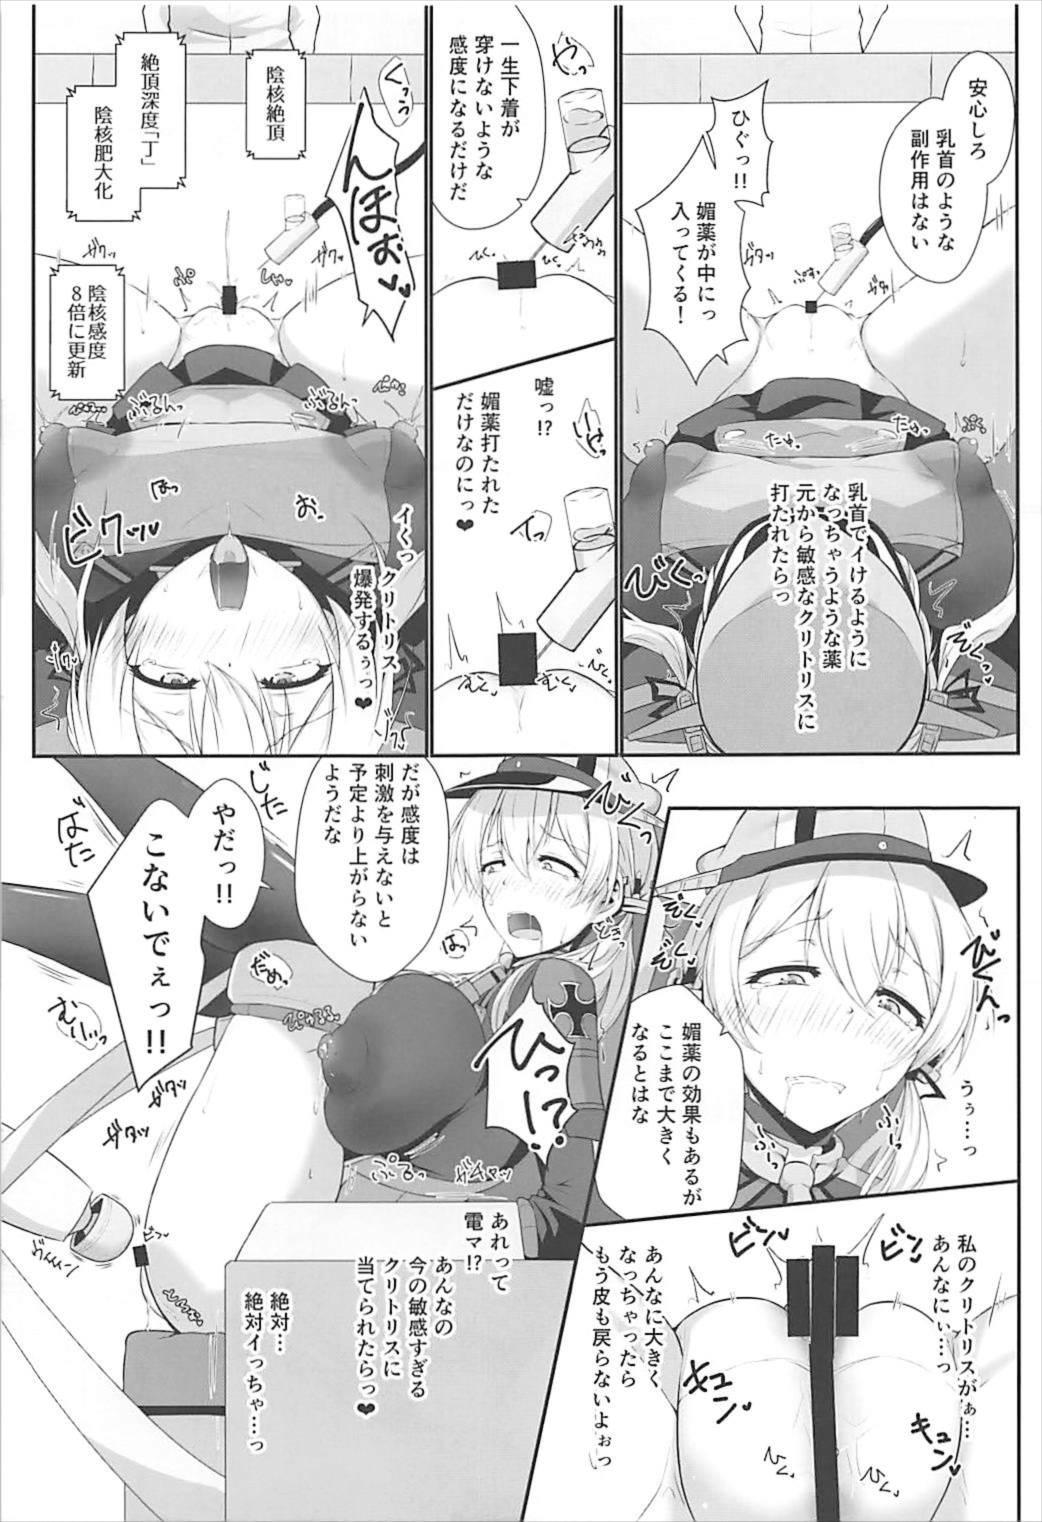 Sucks Doitsukan wa Kikaikan ni Kussuru Hazu ga Nain dakara! - Kantai collection Whatsapp - Page 7